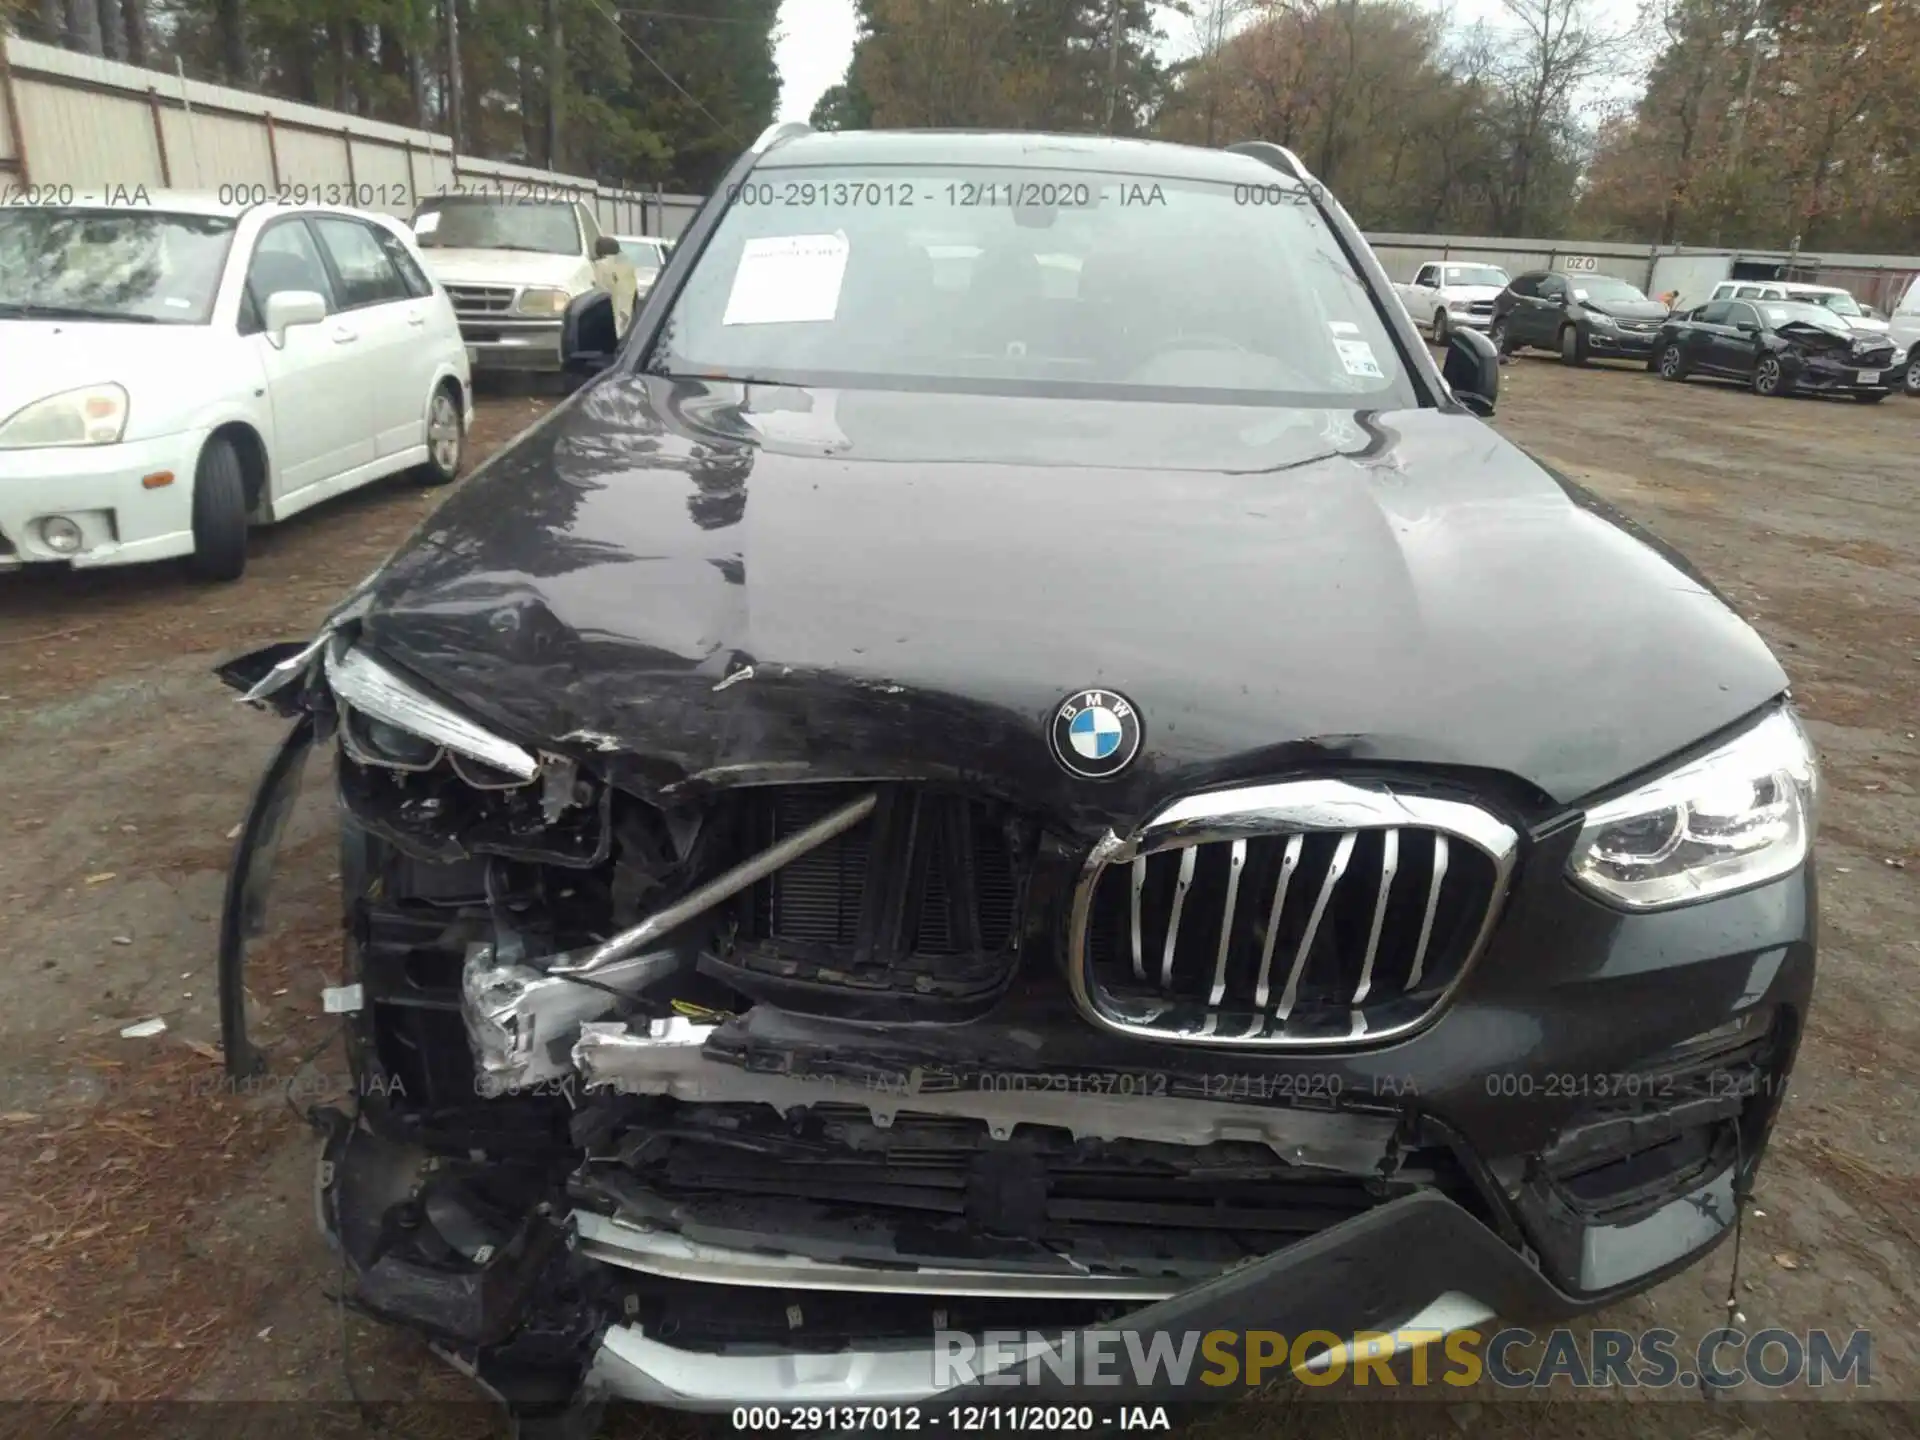 10 Photograph of a damaged car 5UXTY3C02LLU72639 BMW X3 2020